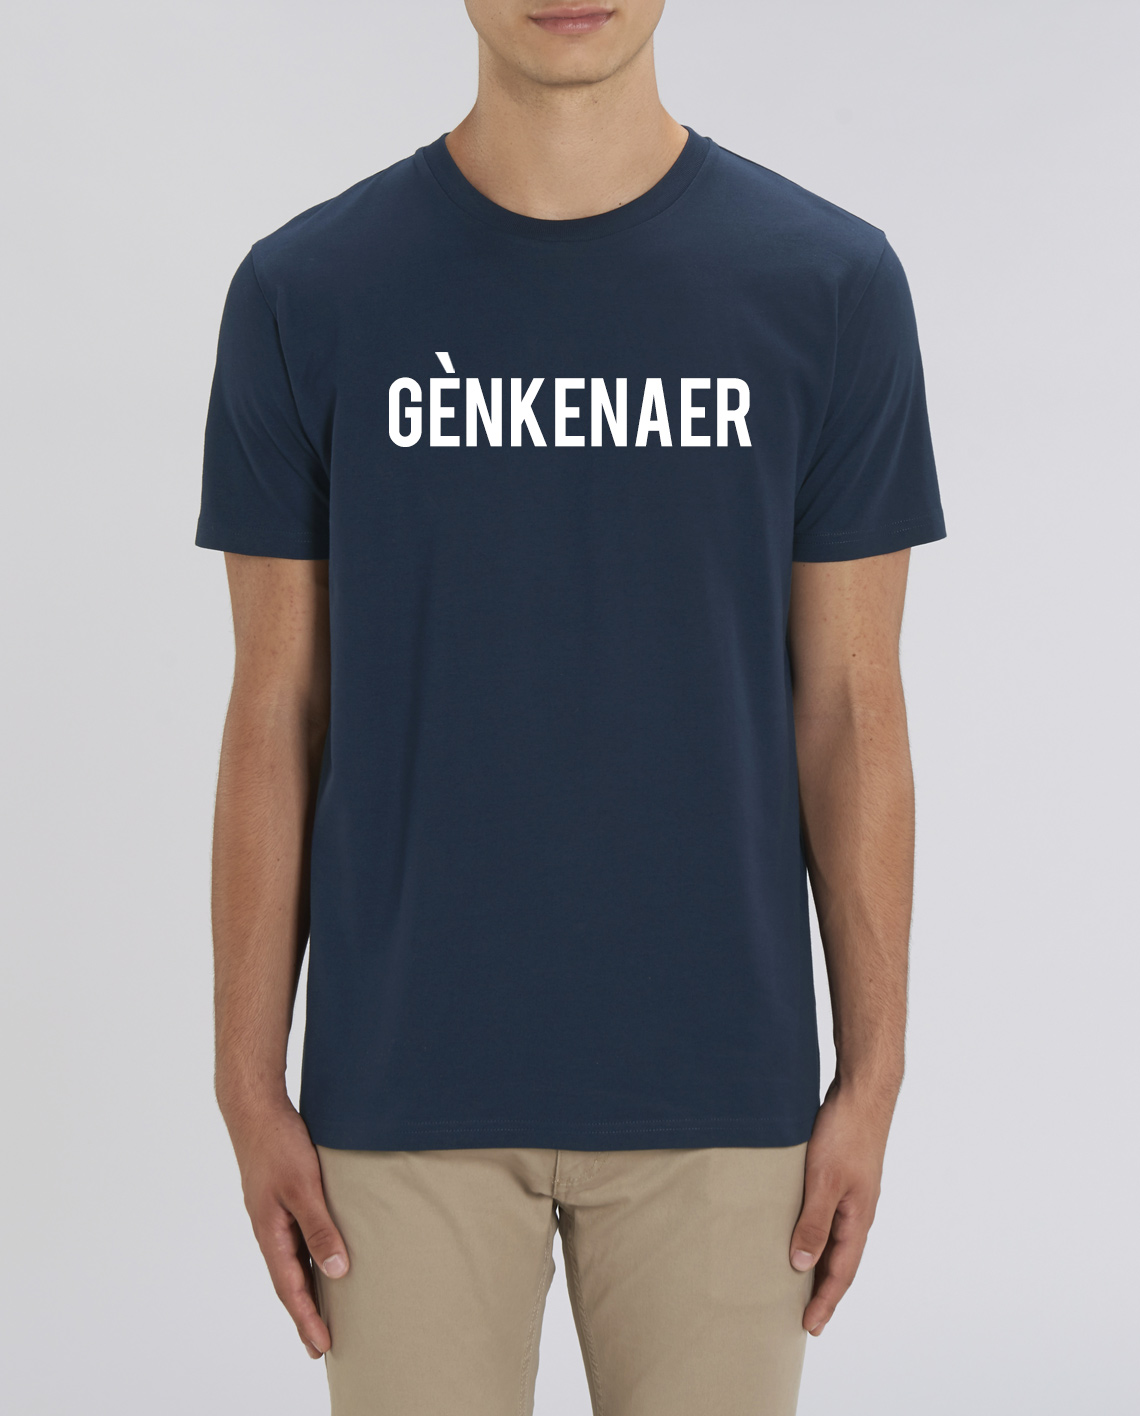 voldoende recept Raar T-Shirt Gènkenaer (M) online kopen bij Intdialect - Intdialect >>